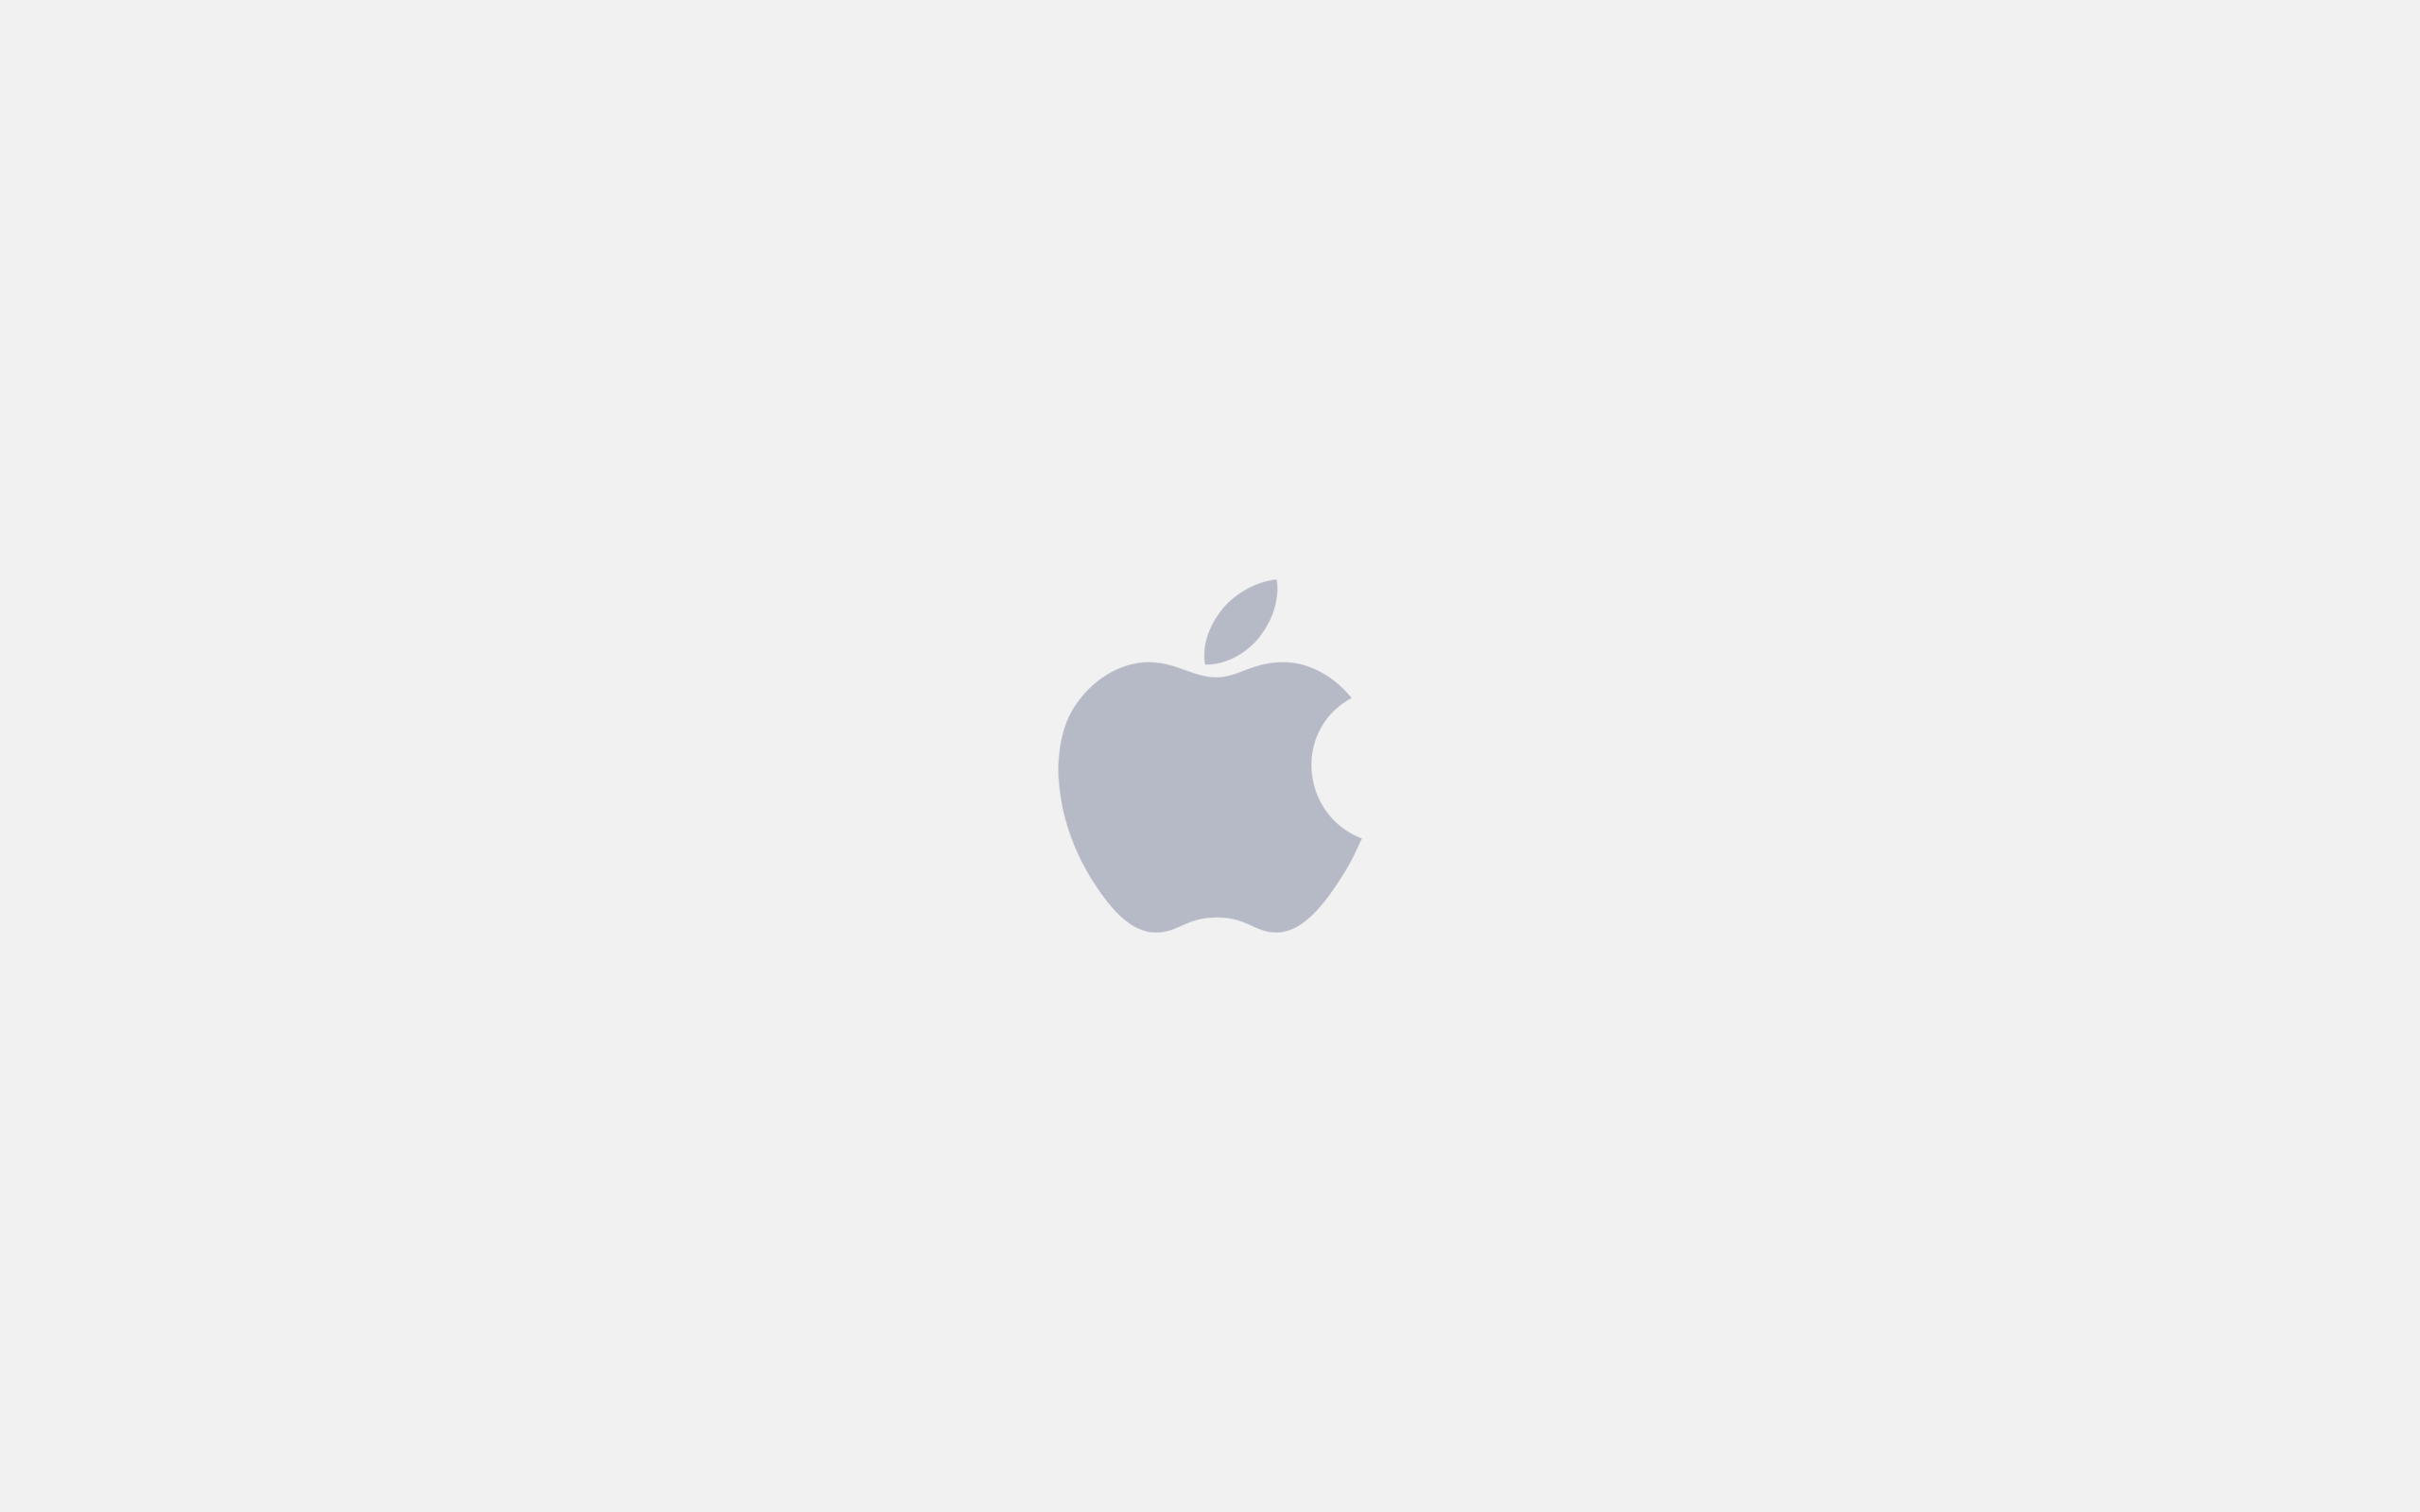 ... White Apple Logo Wallpaper